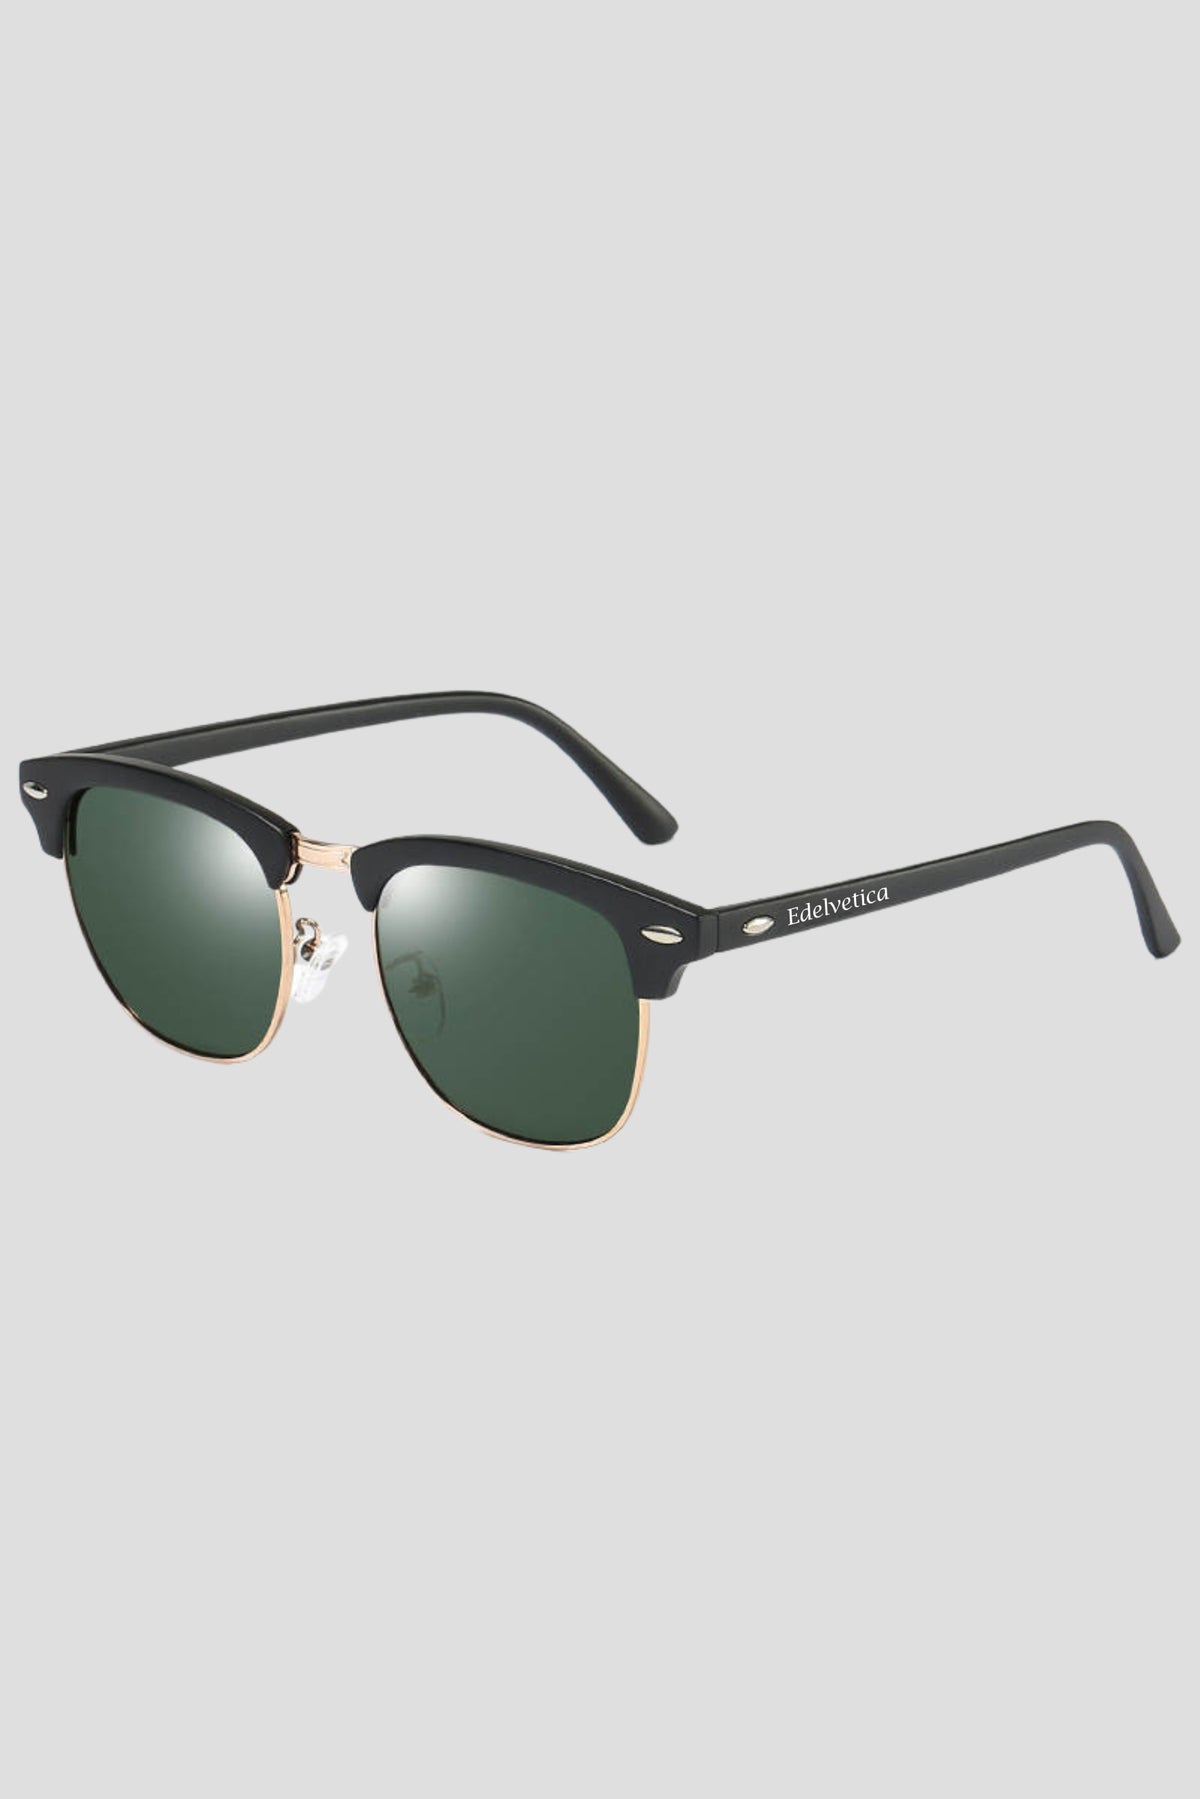 Stilvolle Sonnenbrille Classic Edelvetica mit UV 400 Schutz in verschiedenen Farben